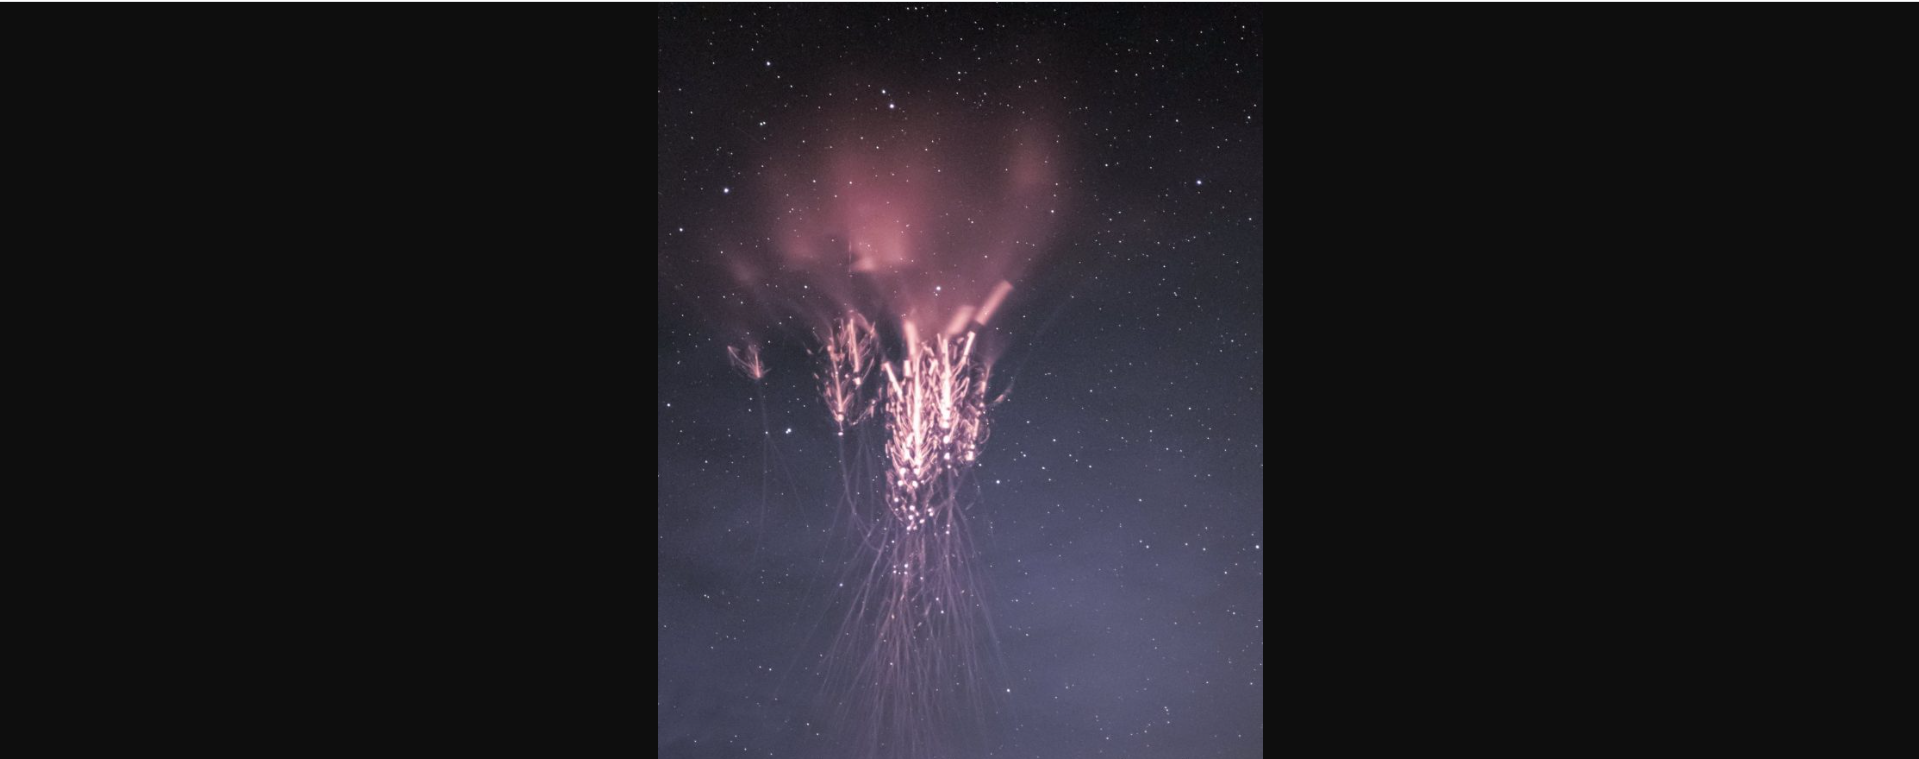 Αστρονόμος κατέγραψε έναν σπάνιο κεραυνό στον ουρανό της Ευρώπης (φωτο)